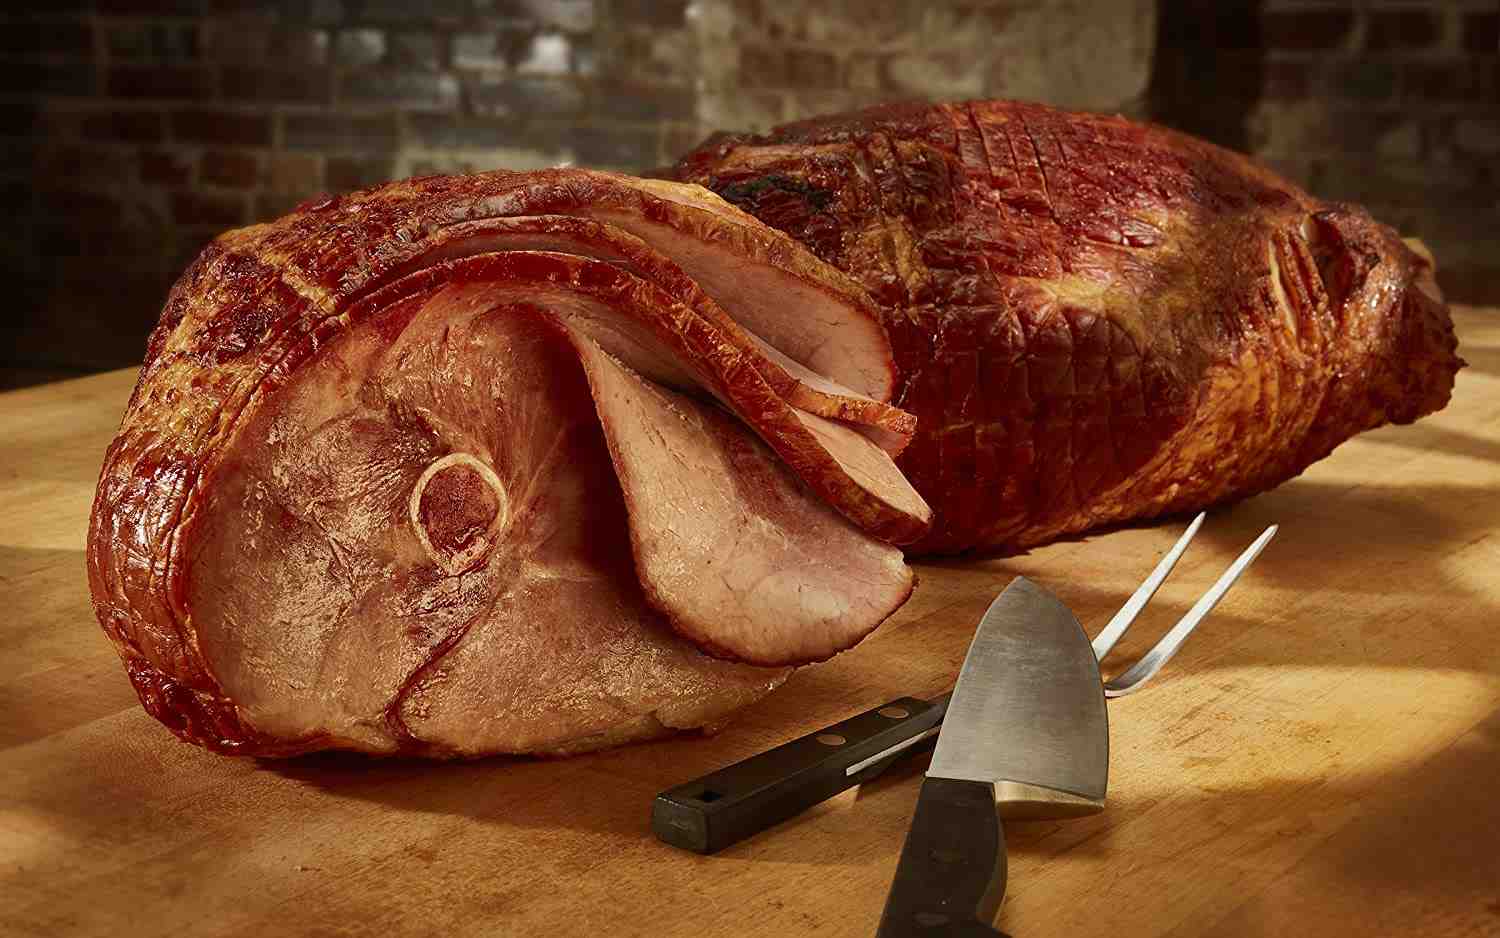 Can you cut through a ham bone?